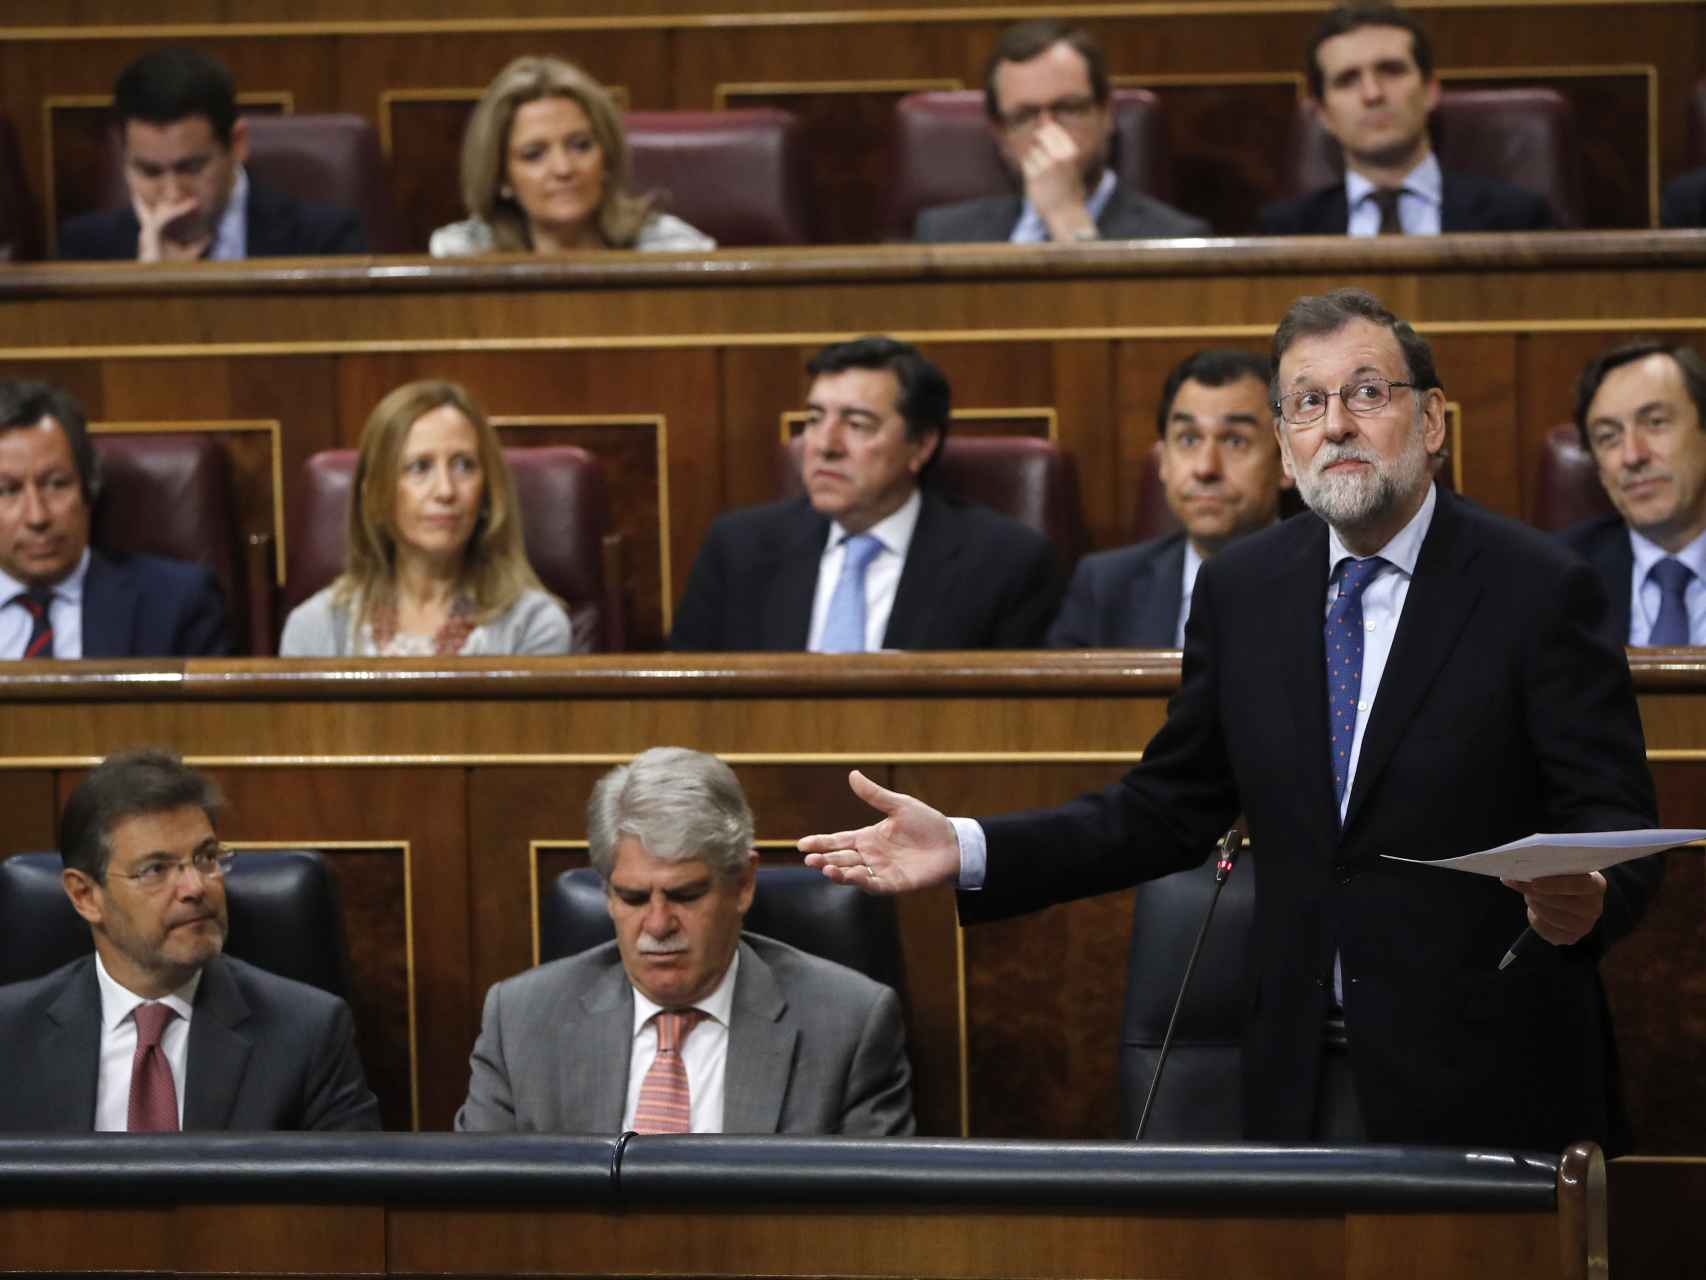 El presidente del Gobierno, Mariano Rajoy, durante su intervención hoy en el Congreso